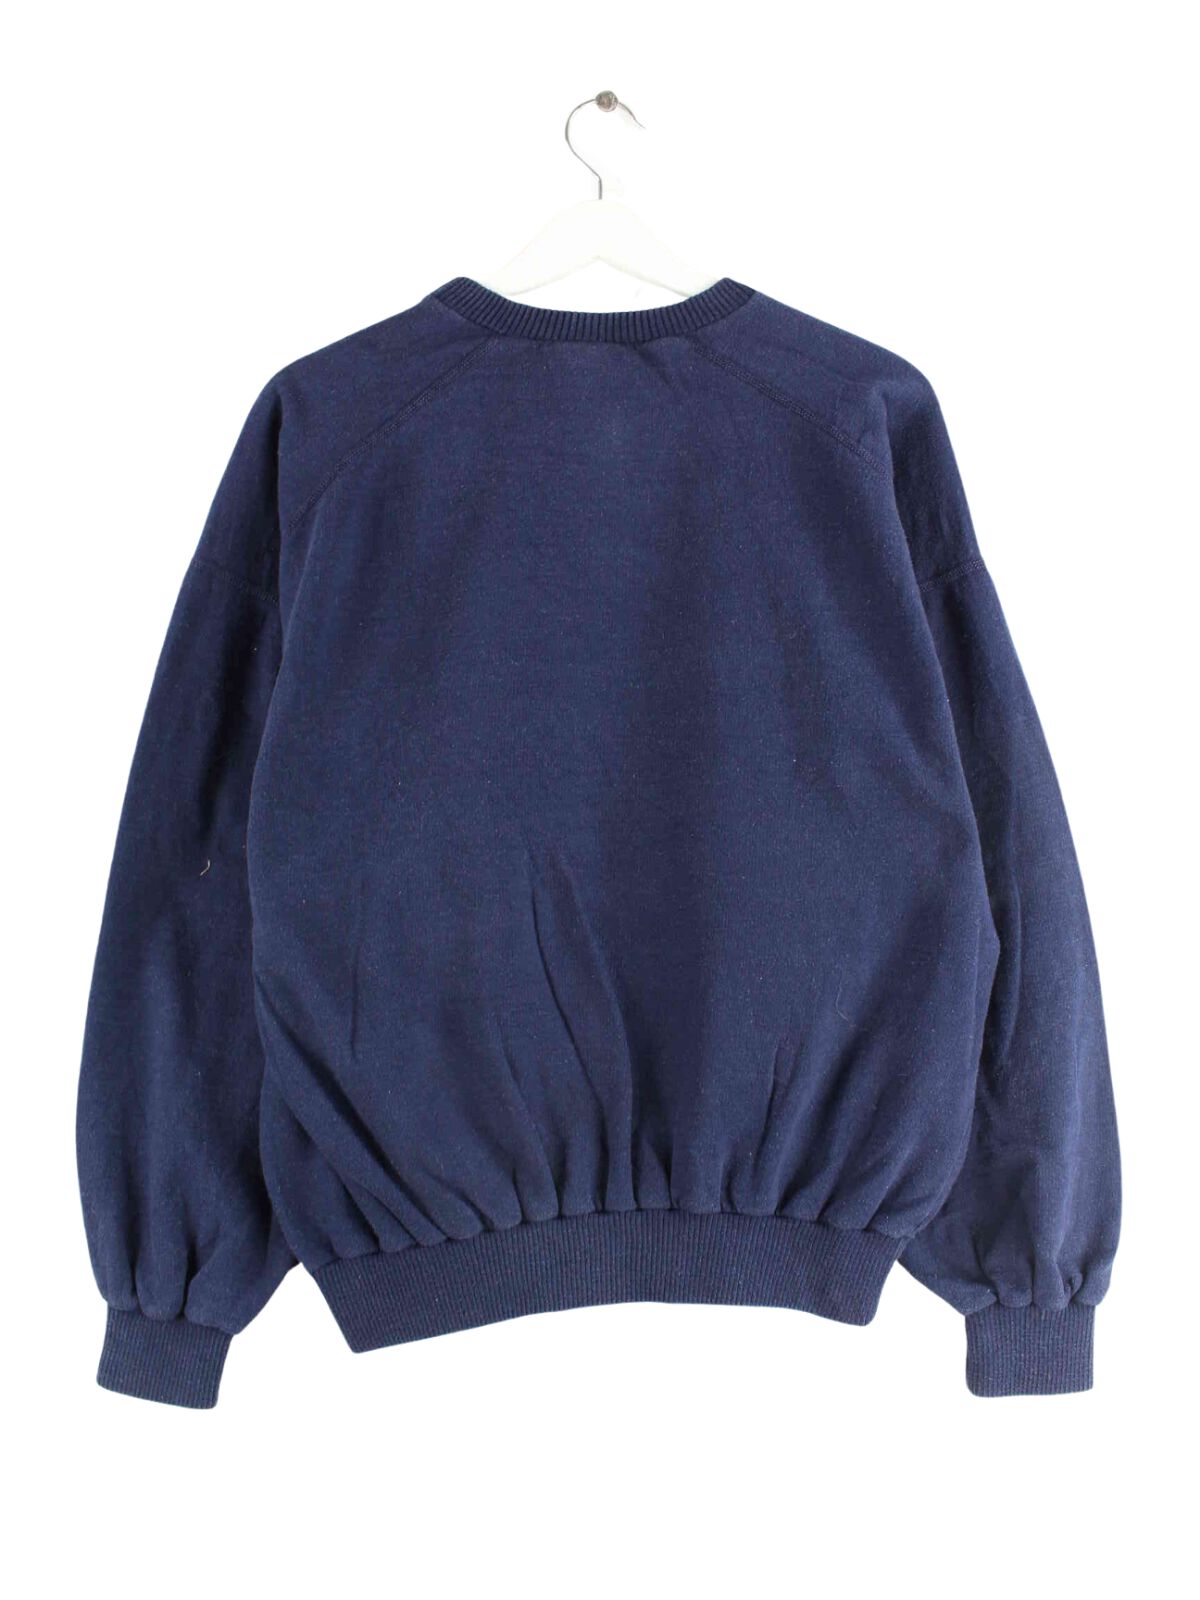 Adidas 70s Vintage Print Sweater Blau M (back image)